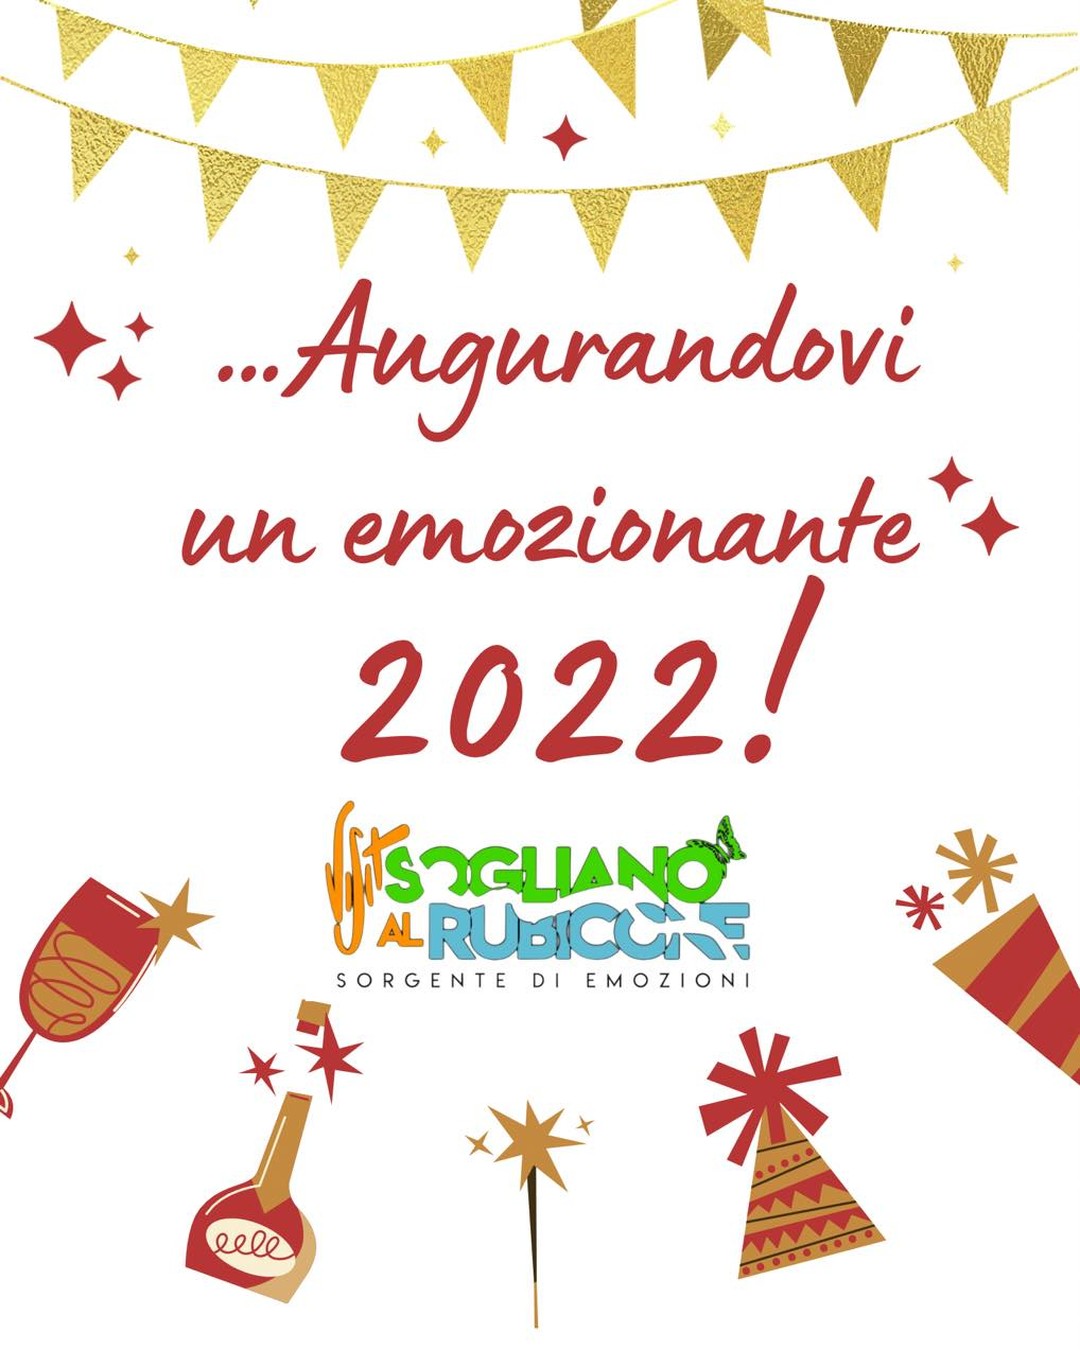 Un caro augurio di buon anno da tutti noi! 💫

——-

🦋 www.visitsoglianoalrubicone.it